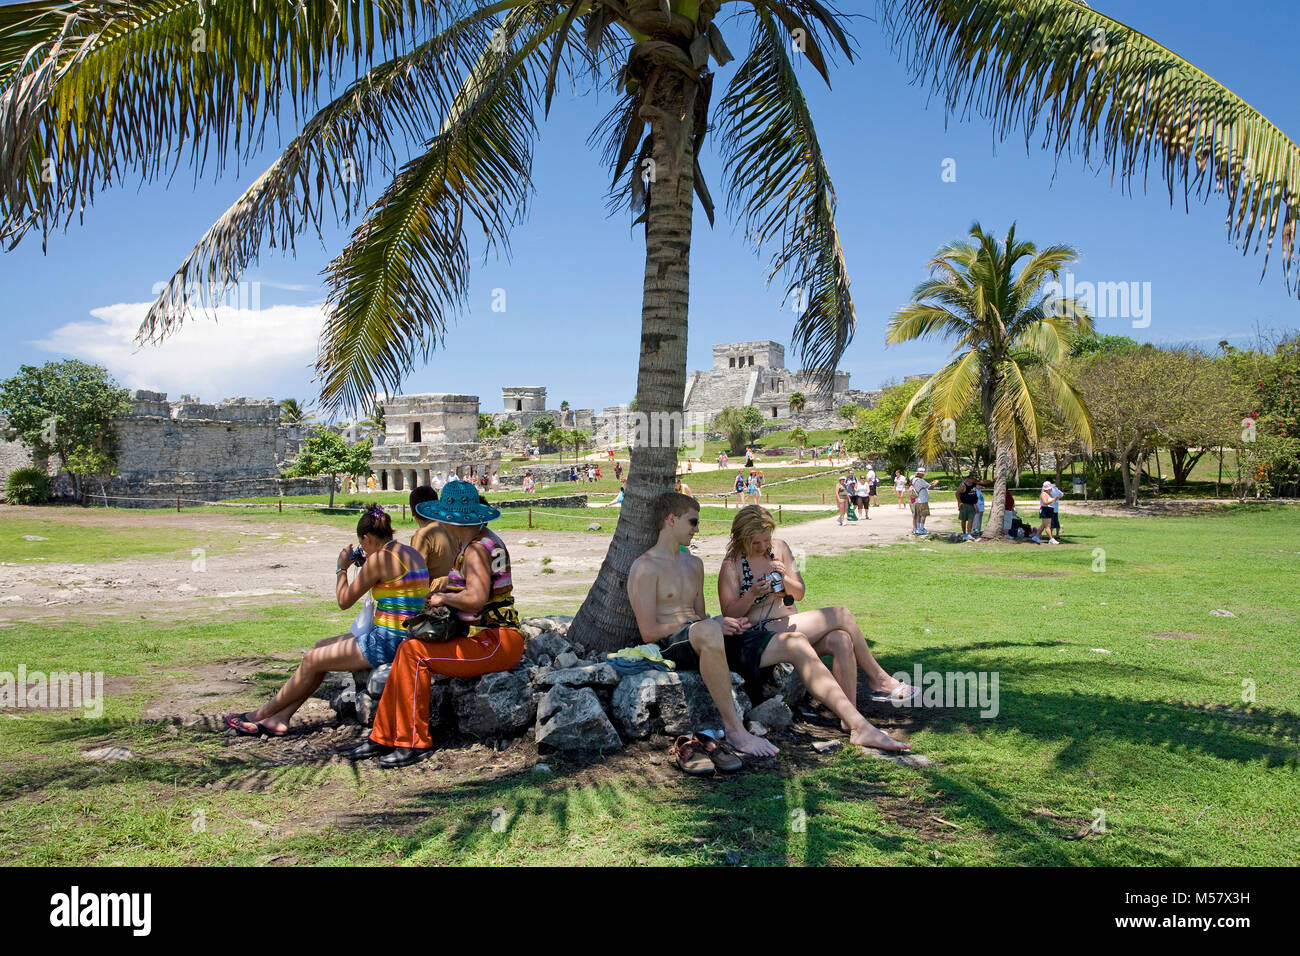 Les touristes se reposant sous un palmier, derrière les ruines Maya de la zone archéologique, à Tulum, Riviera Maya, Quintana Roo, Mexique, Caraïbes Banque D'Images